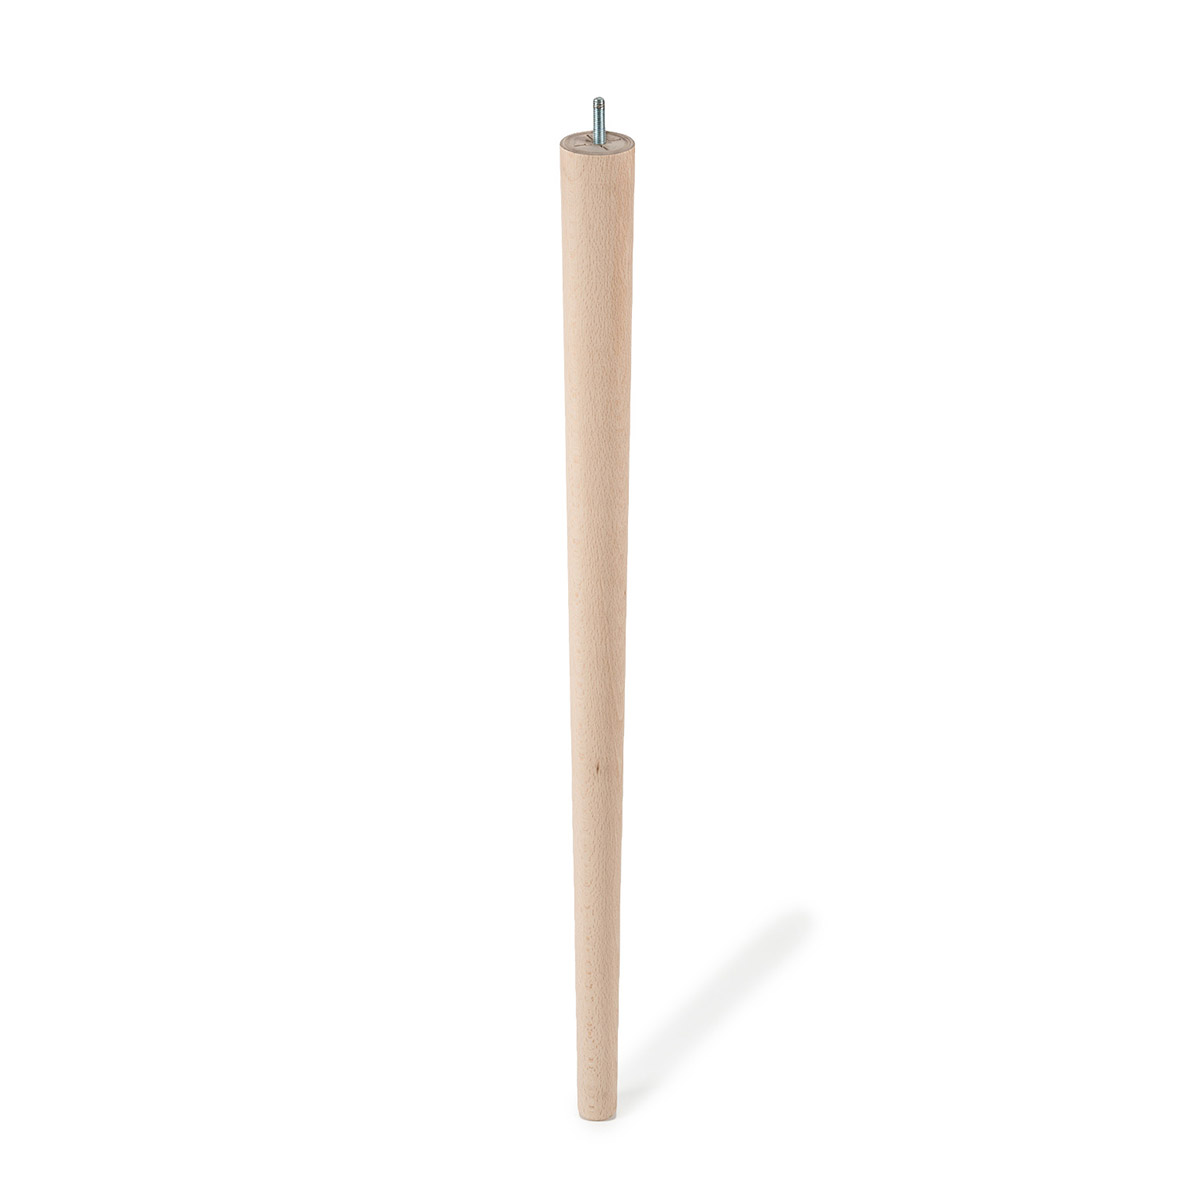 Pied conique en bois d'une hauteur de 720 mm et finition hêtre brut. Dimensions: 48x48x720 mm